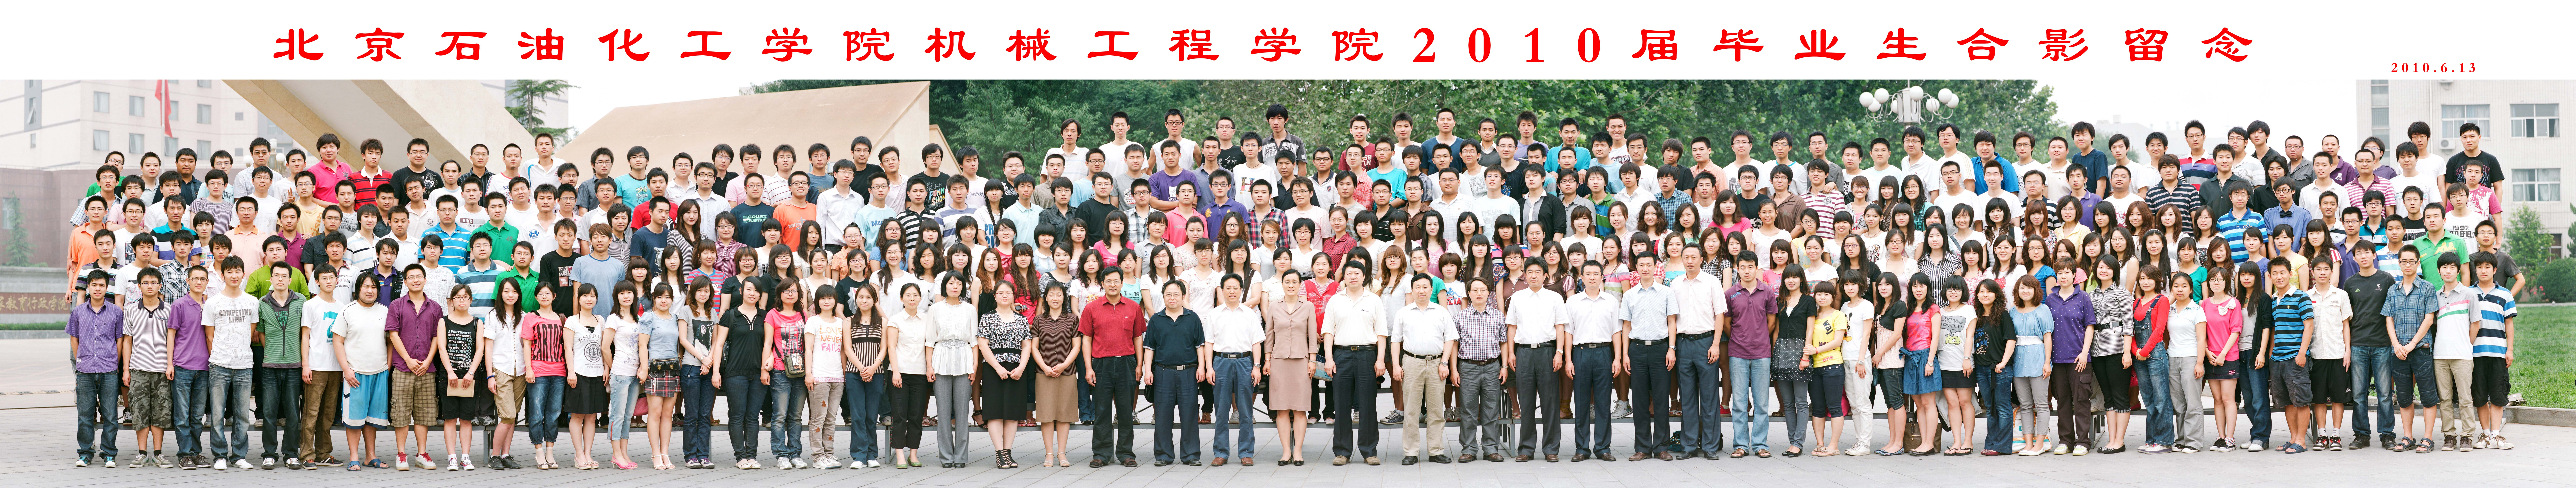 银河集团:198net有限公司机械工程学院2010届毕业生合影.jpg